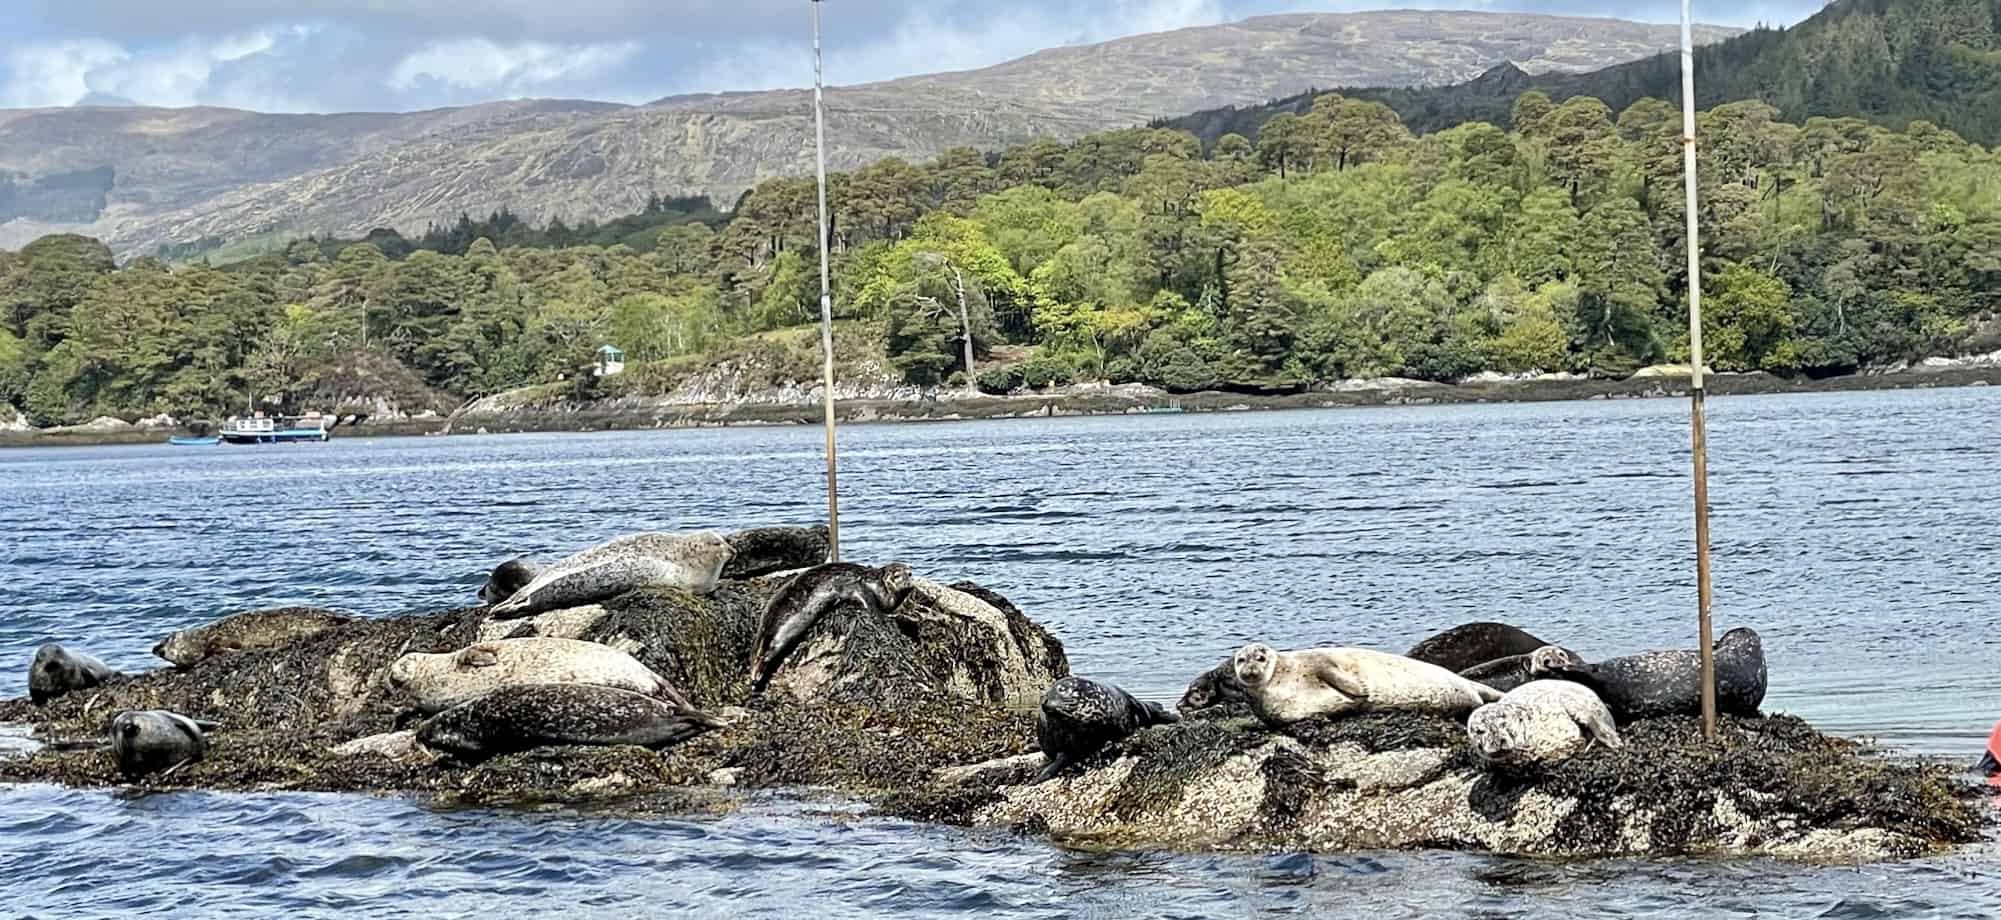 Seals near garnish island